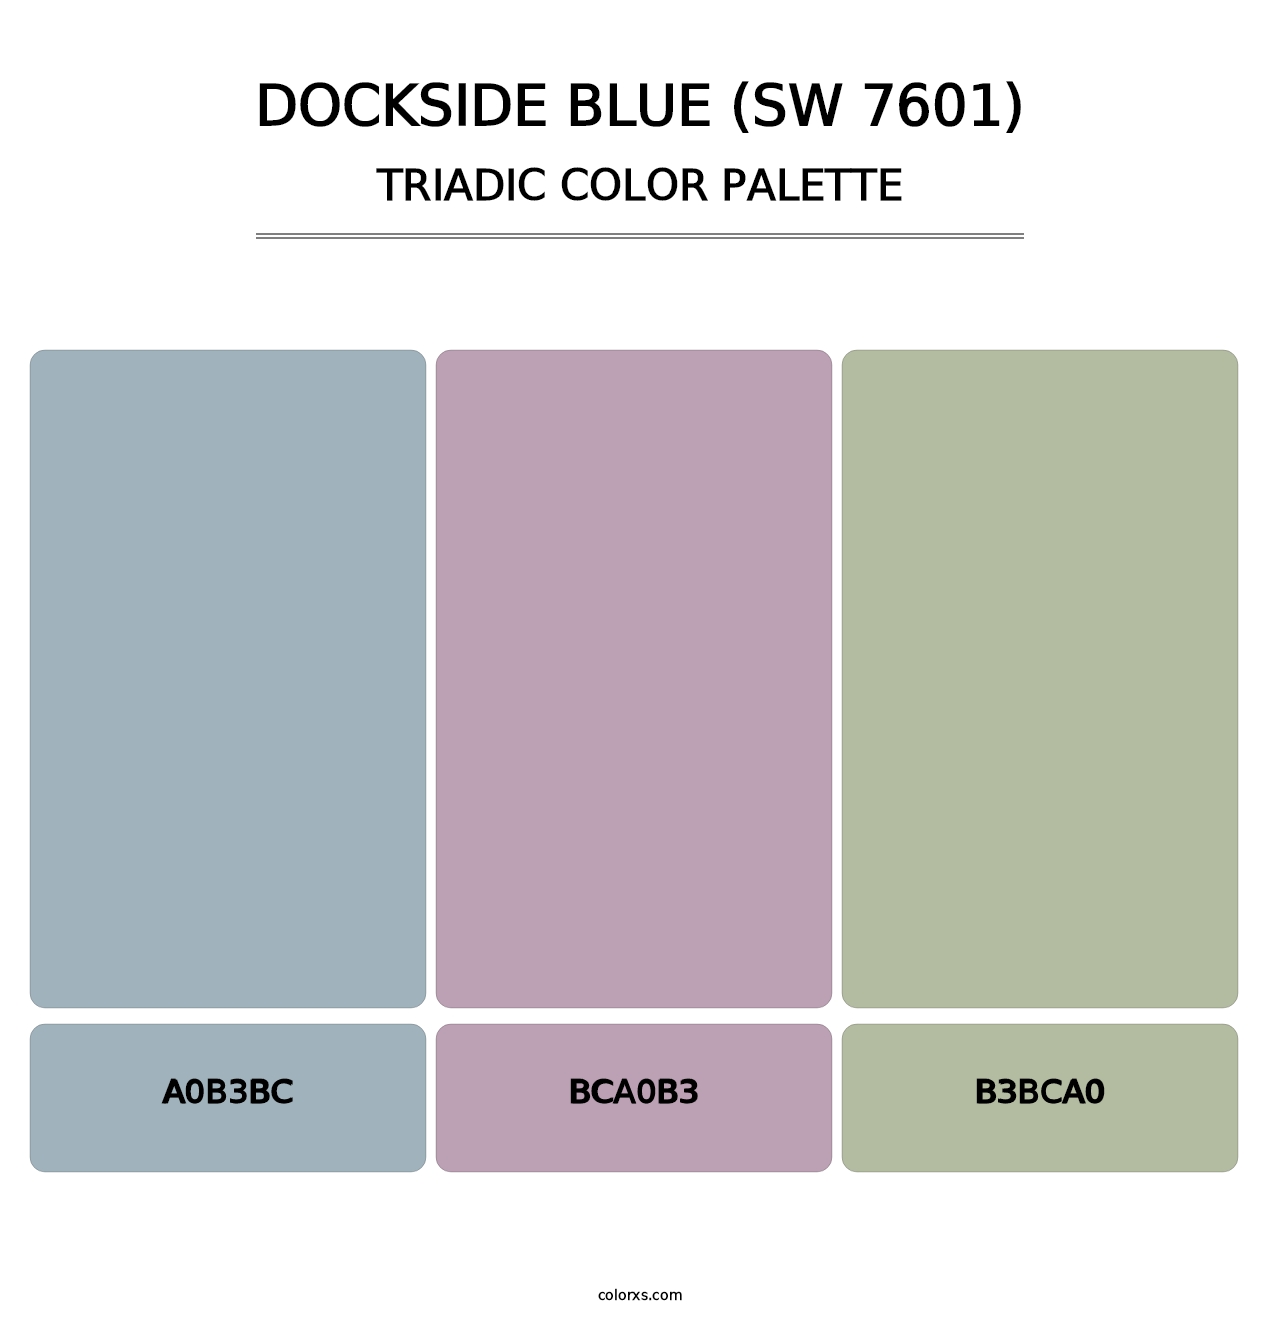 Dockside Blue (SW 7601) - Triadic Color Palette